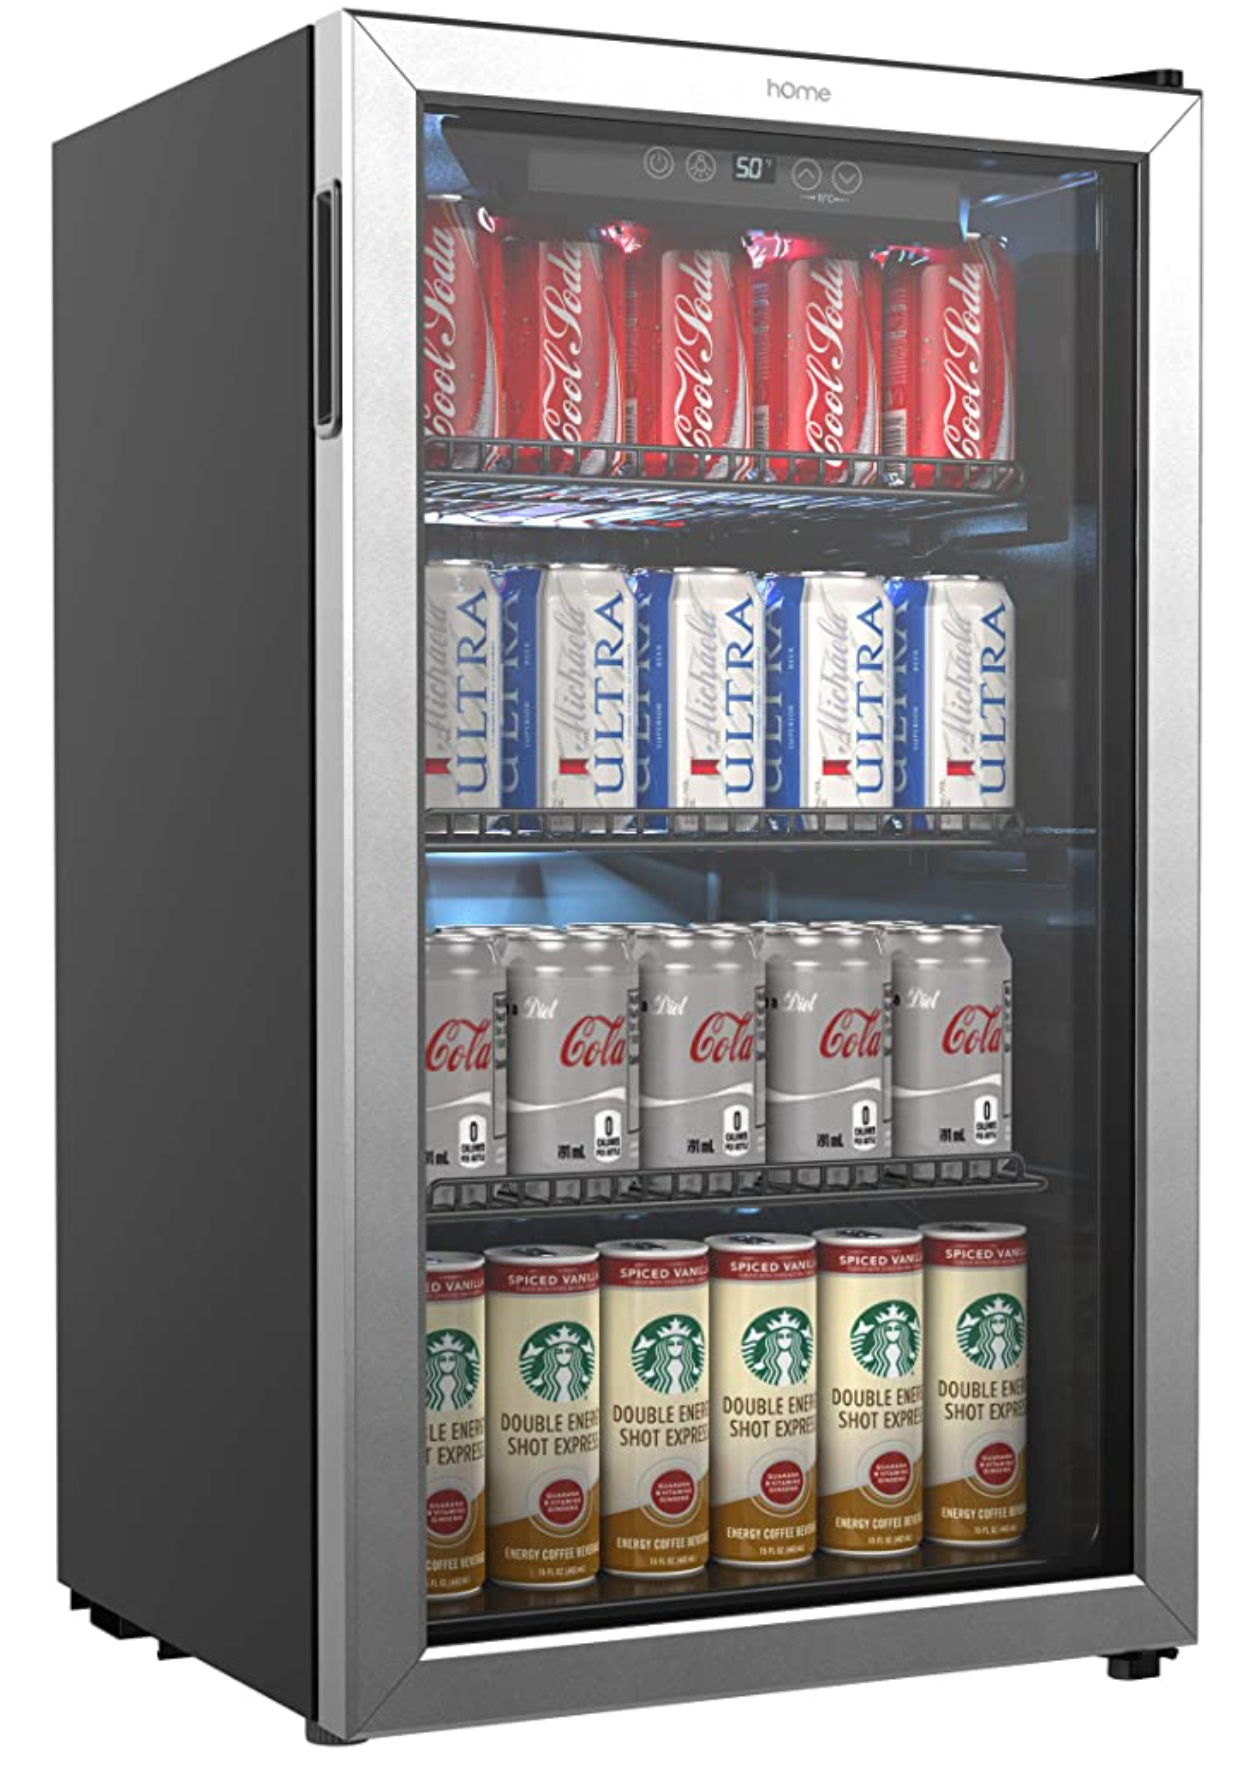 HomeLabs Beverage Refrigerator